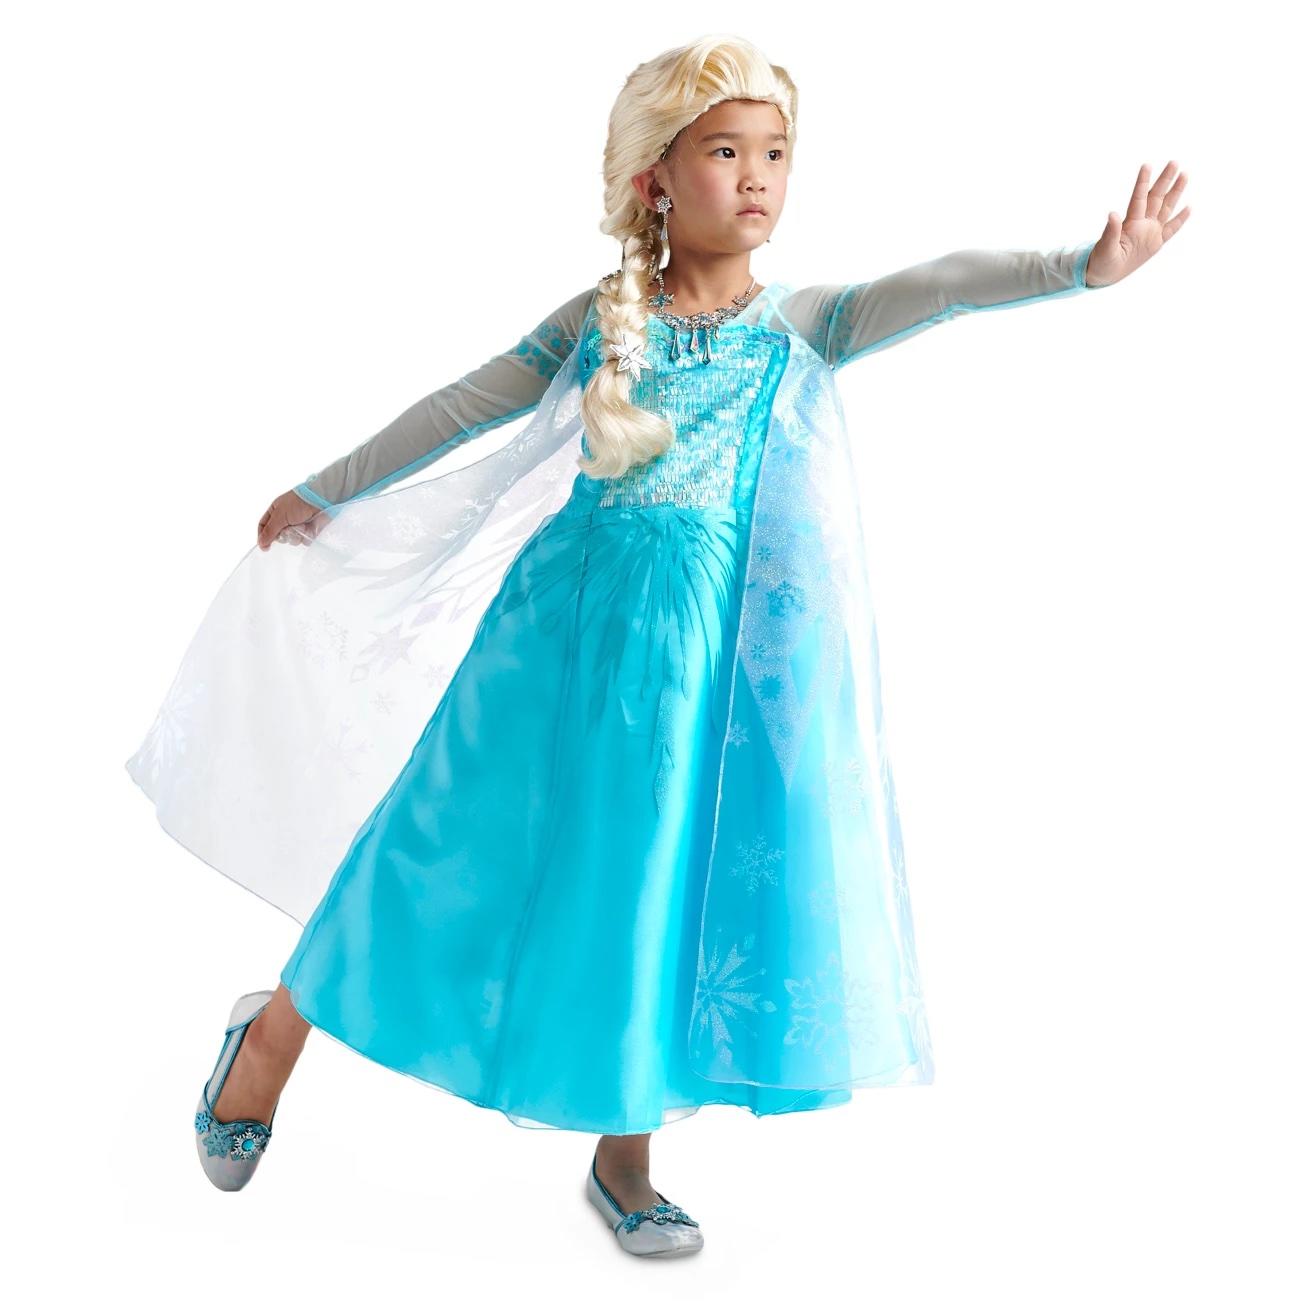 'Frozen' Elsa Halloween costume